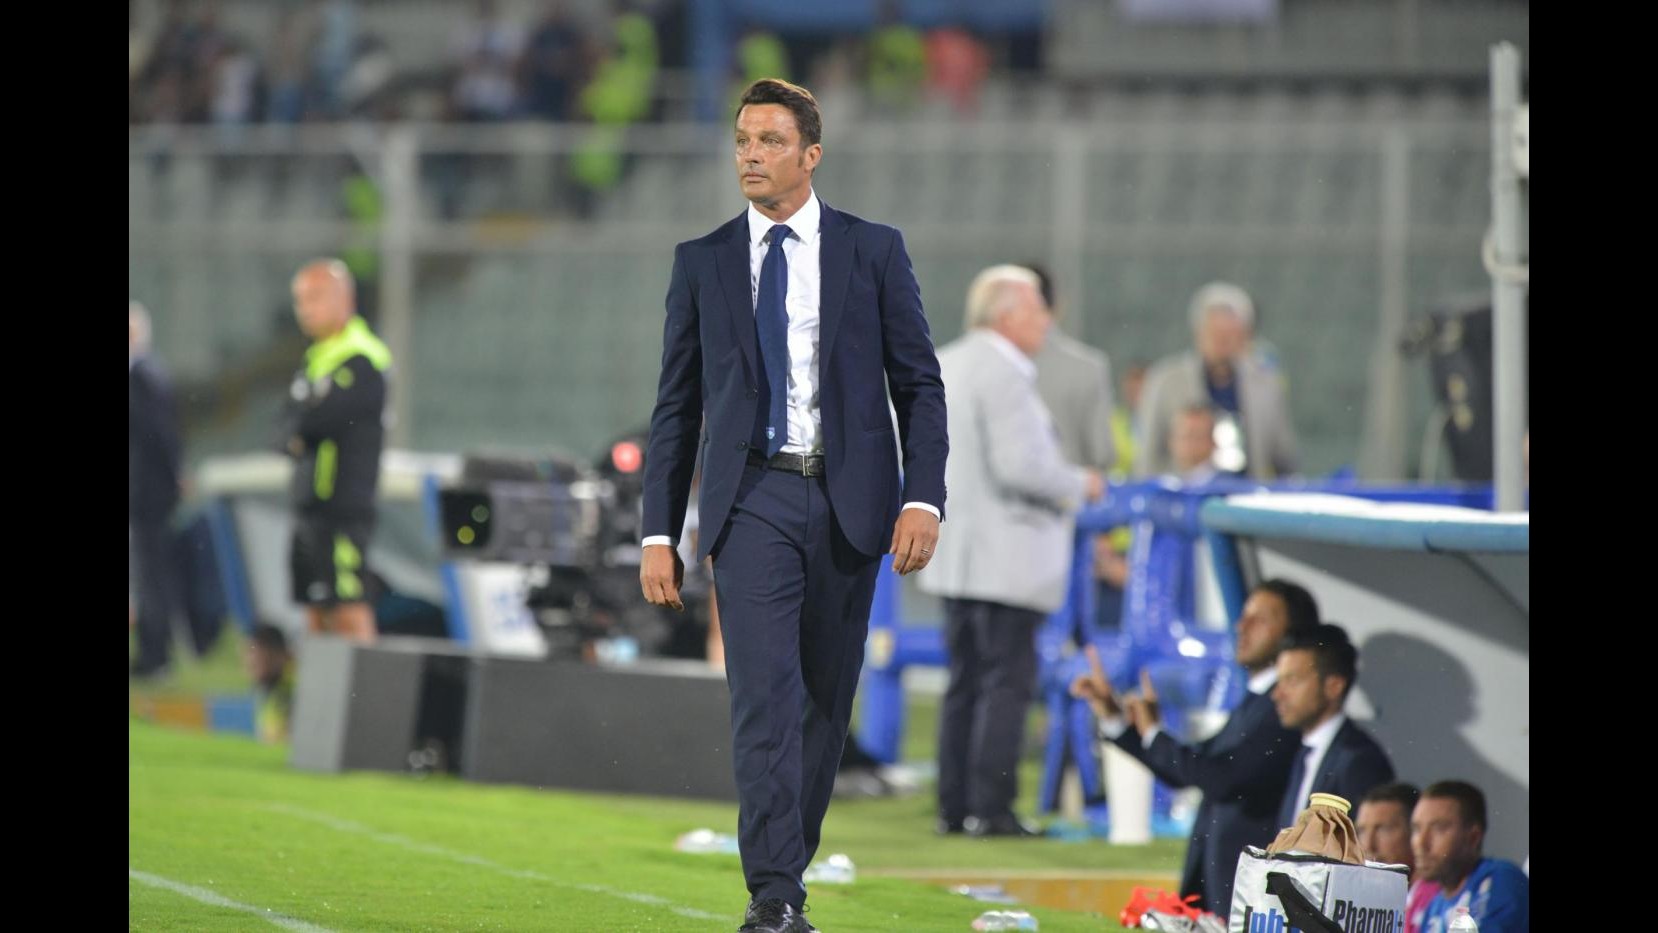 FOTO Pescara va in vantaggio di 2 gol, Napoli rimonta con Mertens